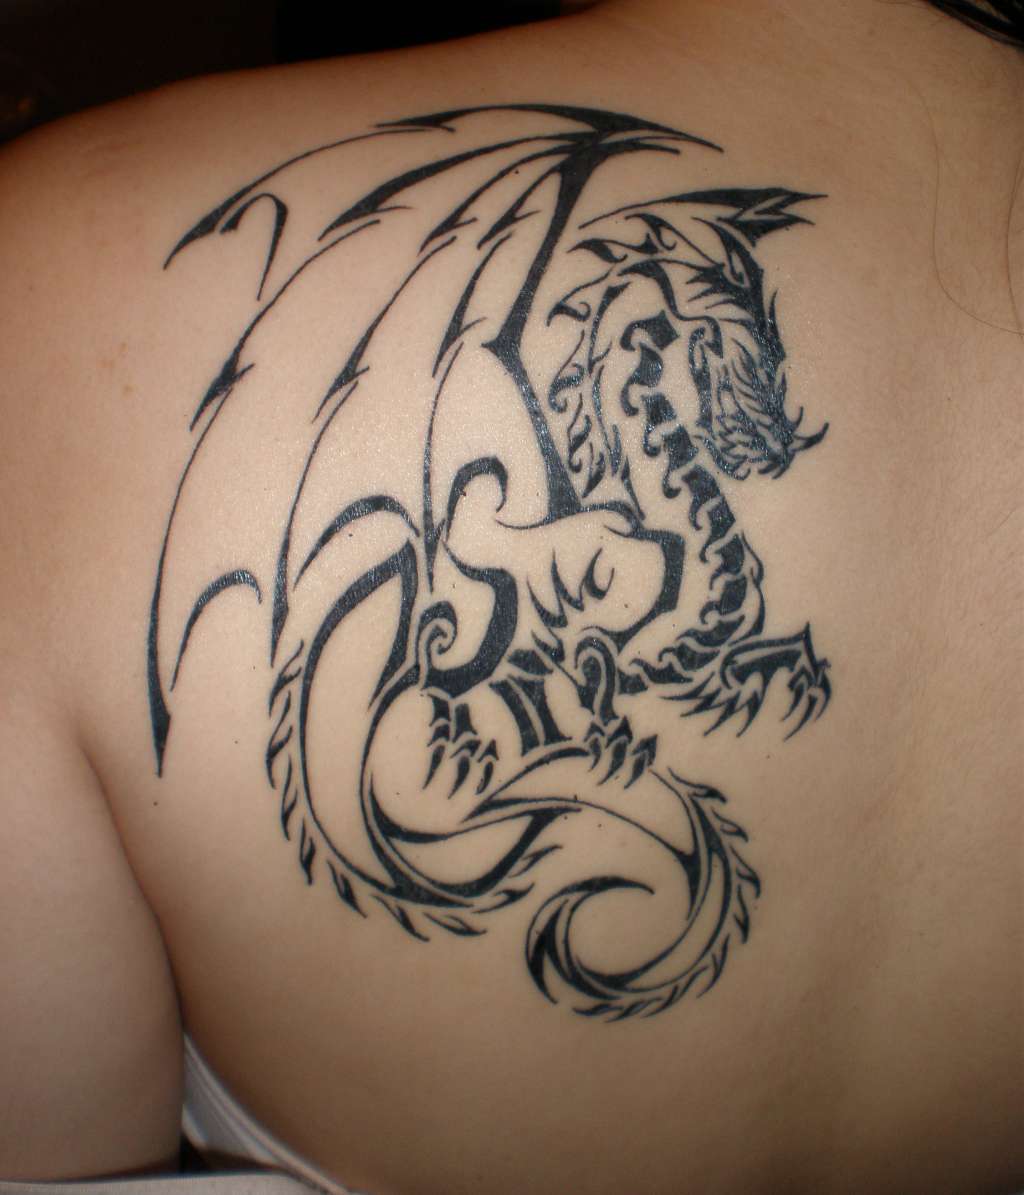 Left Back Shoulder Dragon Tattoo For Girls